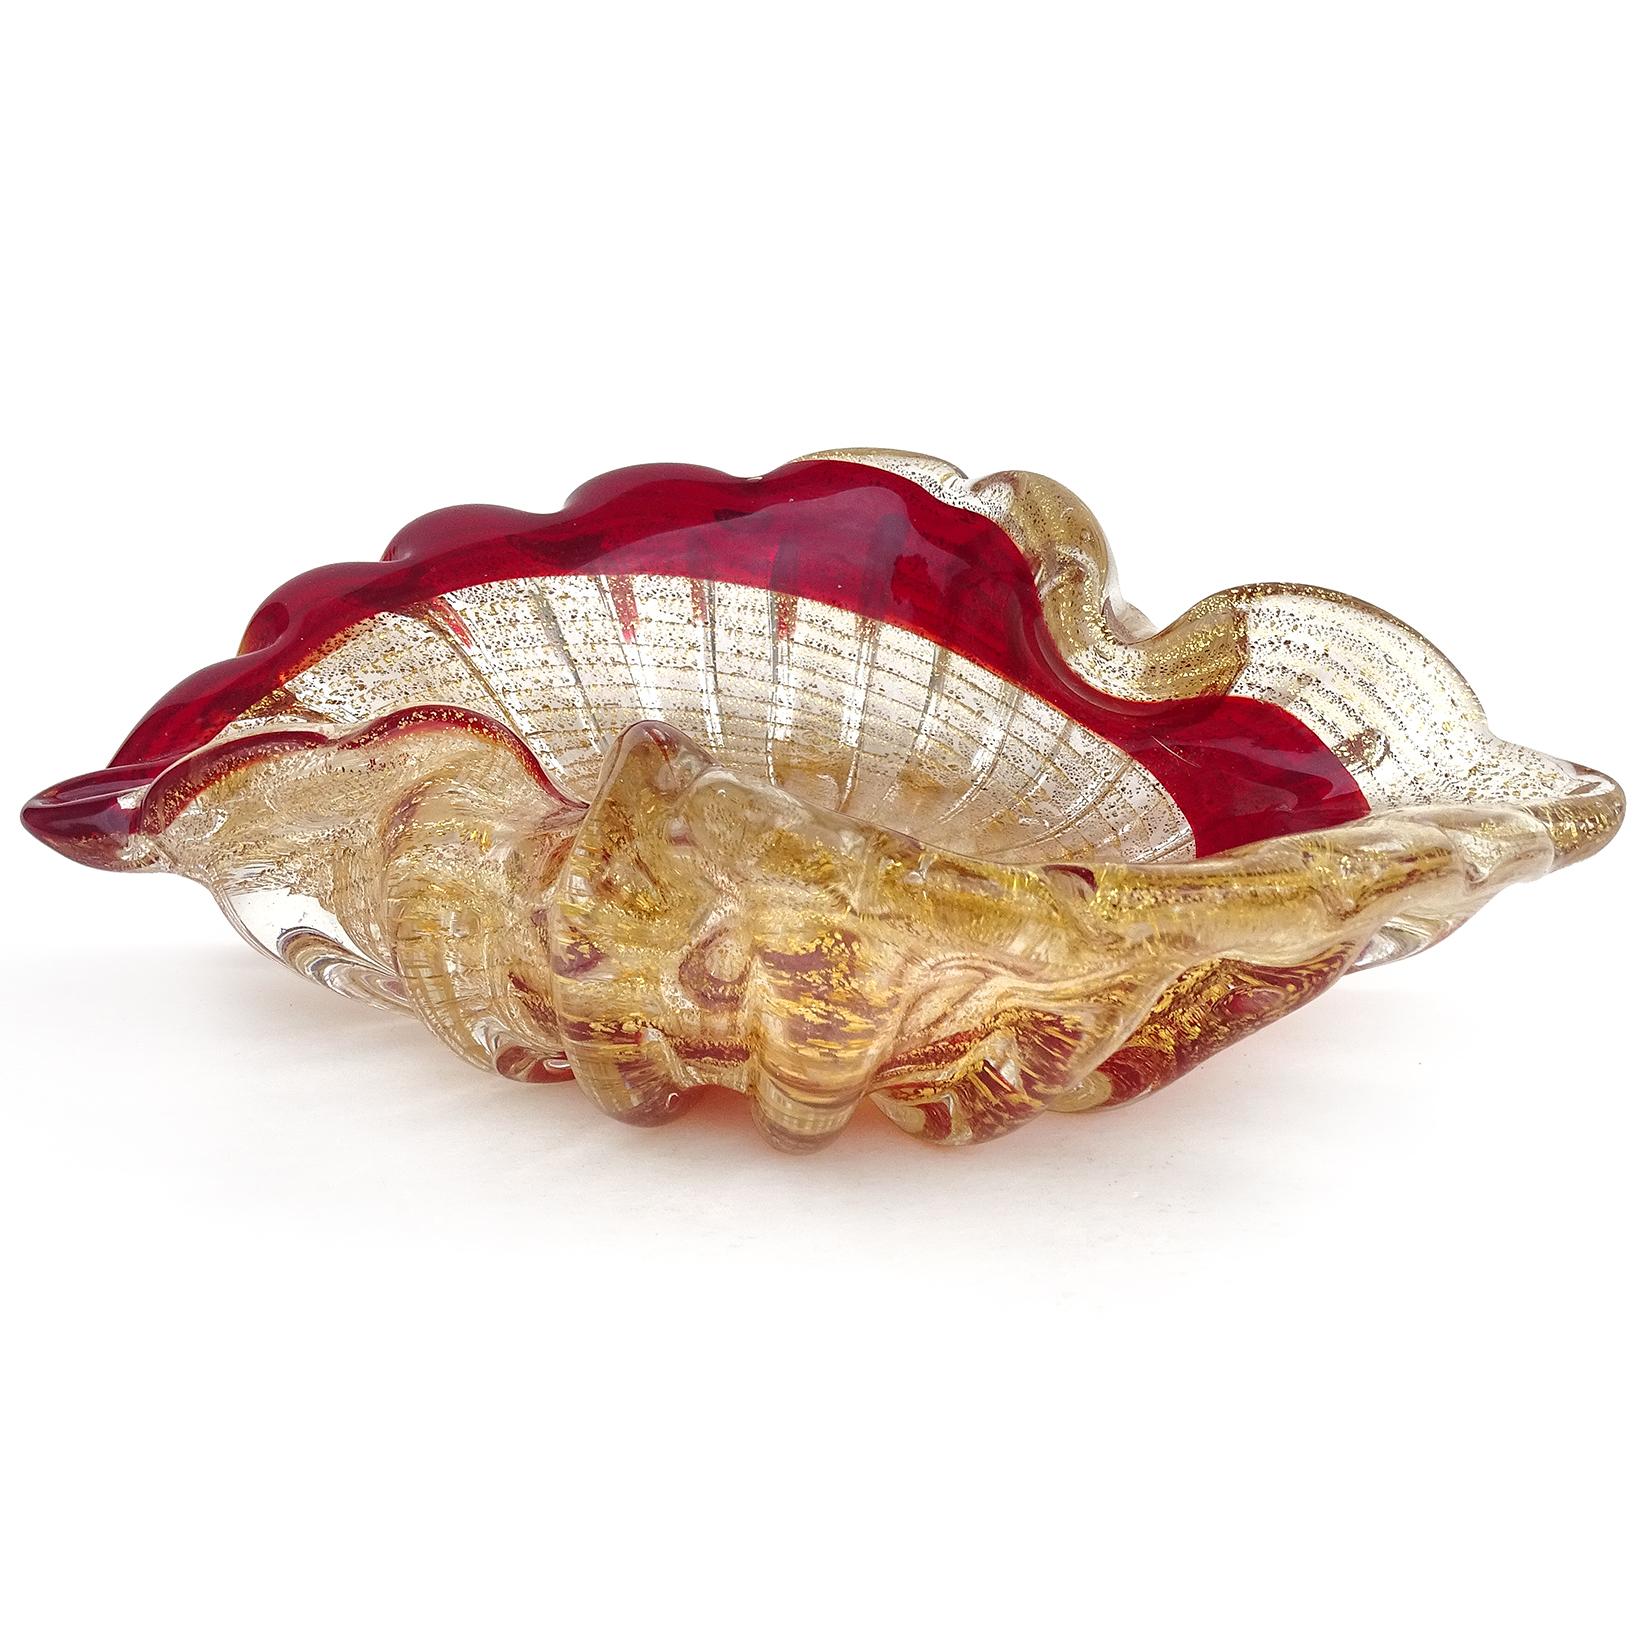 Schöne Vintage Murano mundgeblasen rot, mit Goldflecken italienische Kunst Glasschale. Die Schale hat ein malerisches Wirbel- und Rippenmuster auf der Außenseite und ist reichlich mit Blattgold überzogen. Kann als Ausstellungsstück auf jedem Tisch